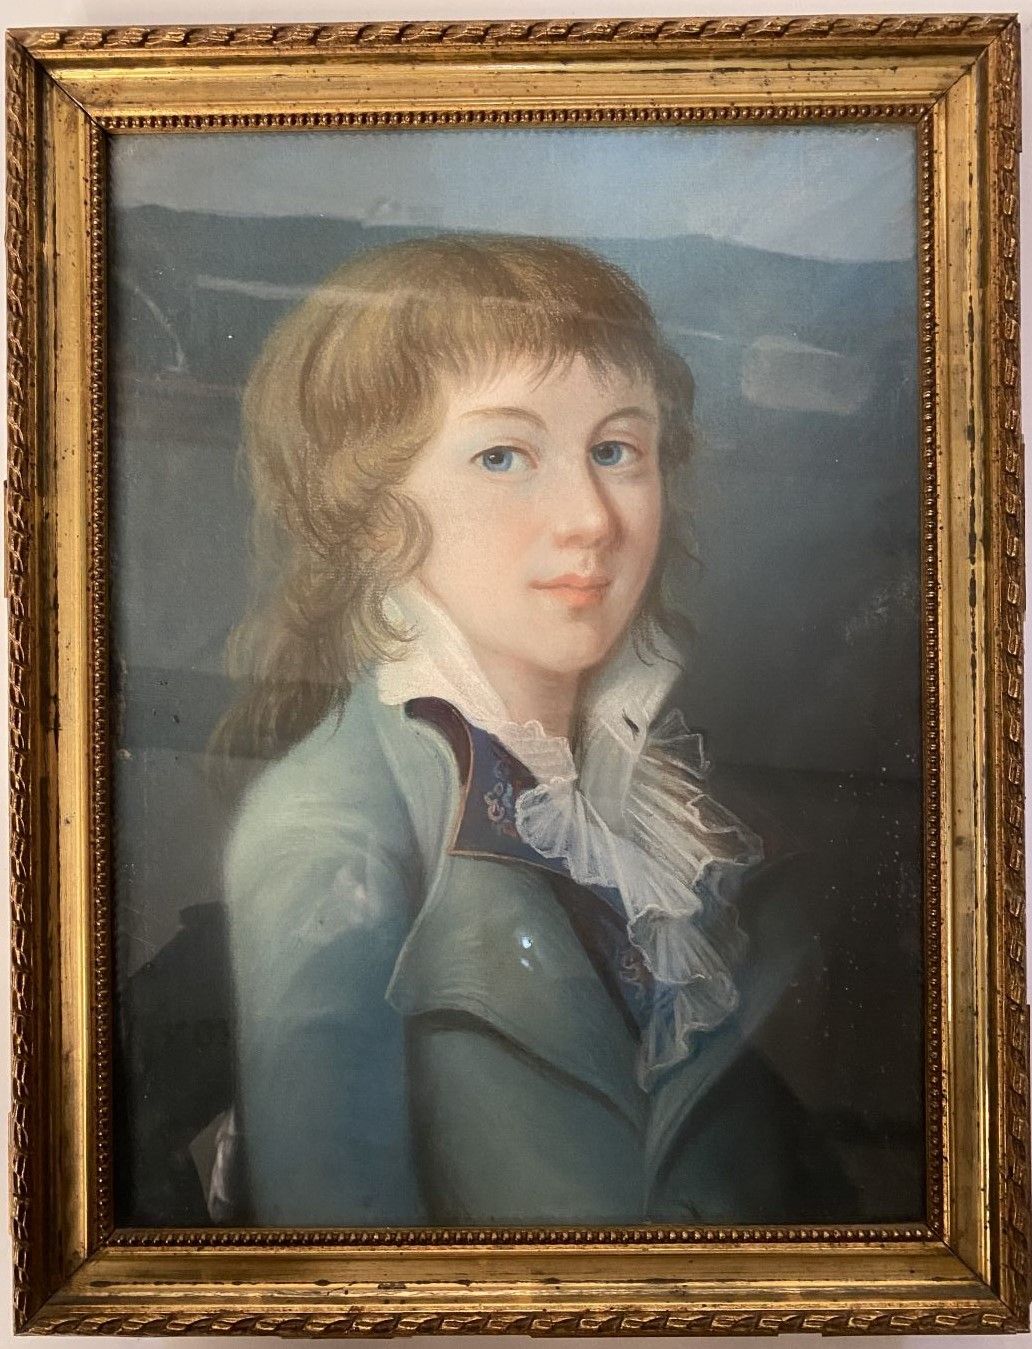 Null 法国学校，19世纪初

戴围脖的年轻人的肖像

纸上粉笔画

38 x 28 cm

在一个木制和镀金灰泥框架中

(霉菌污渍)